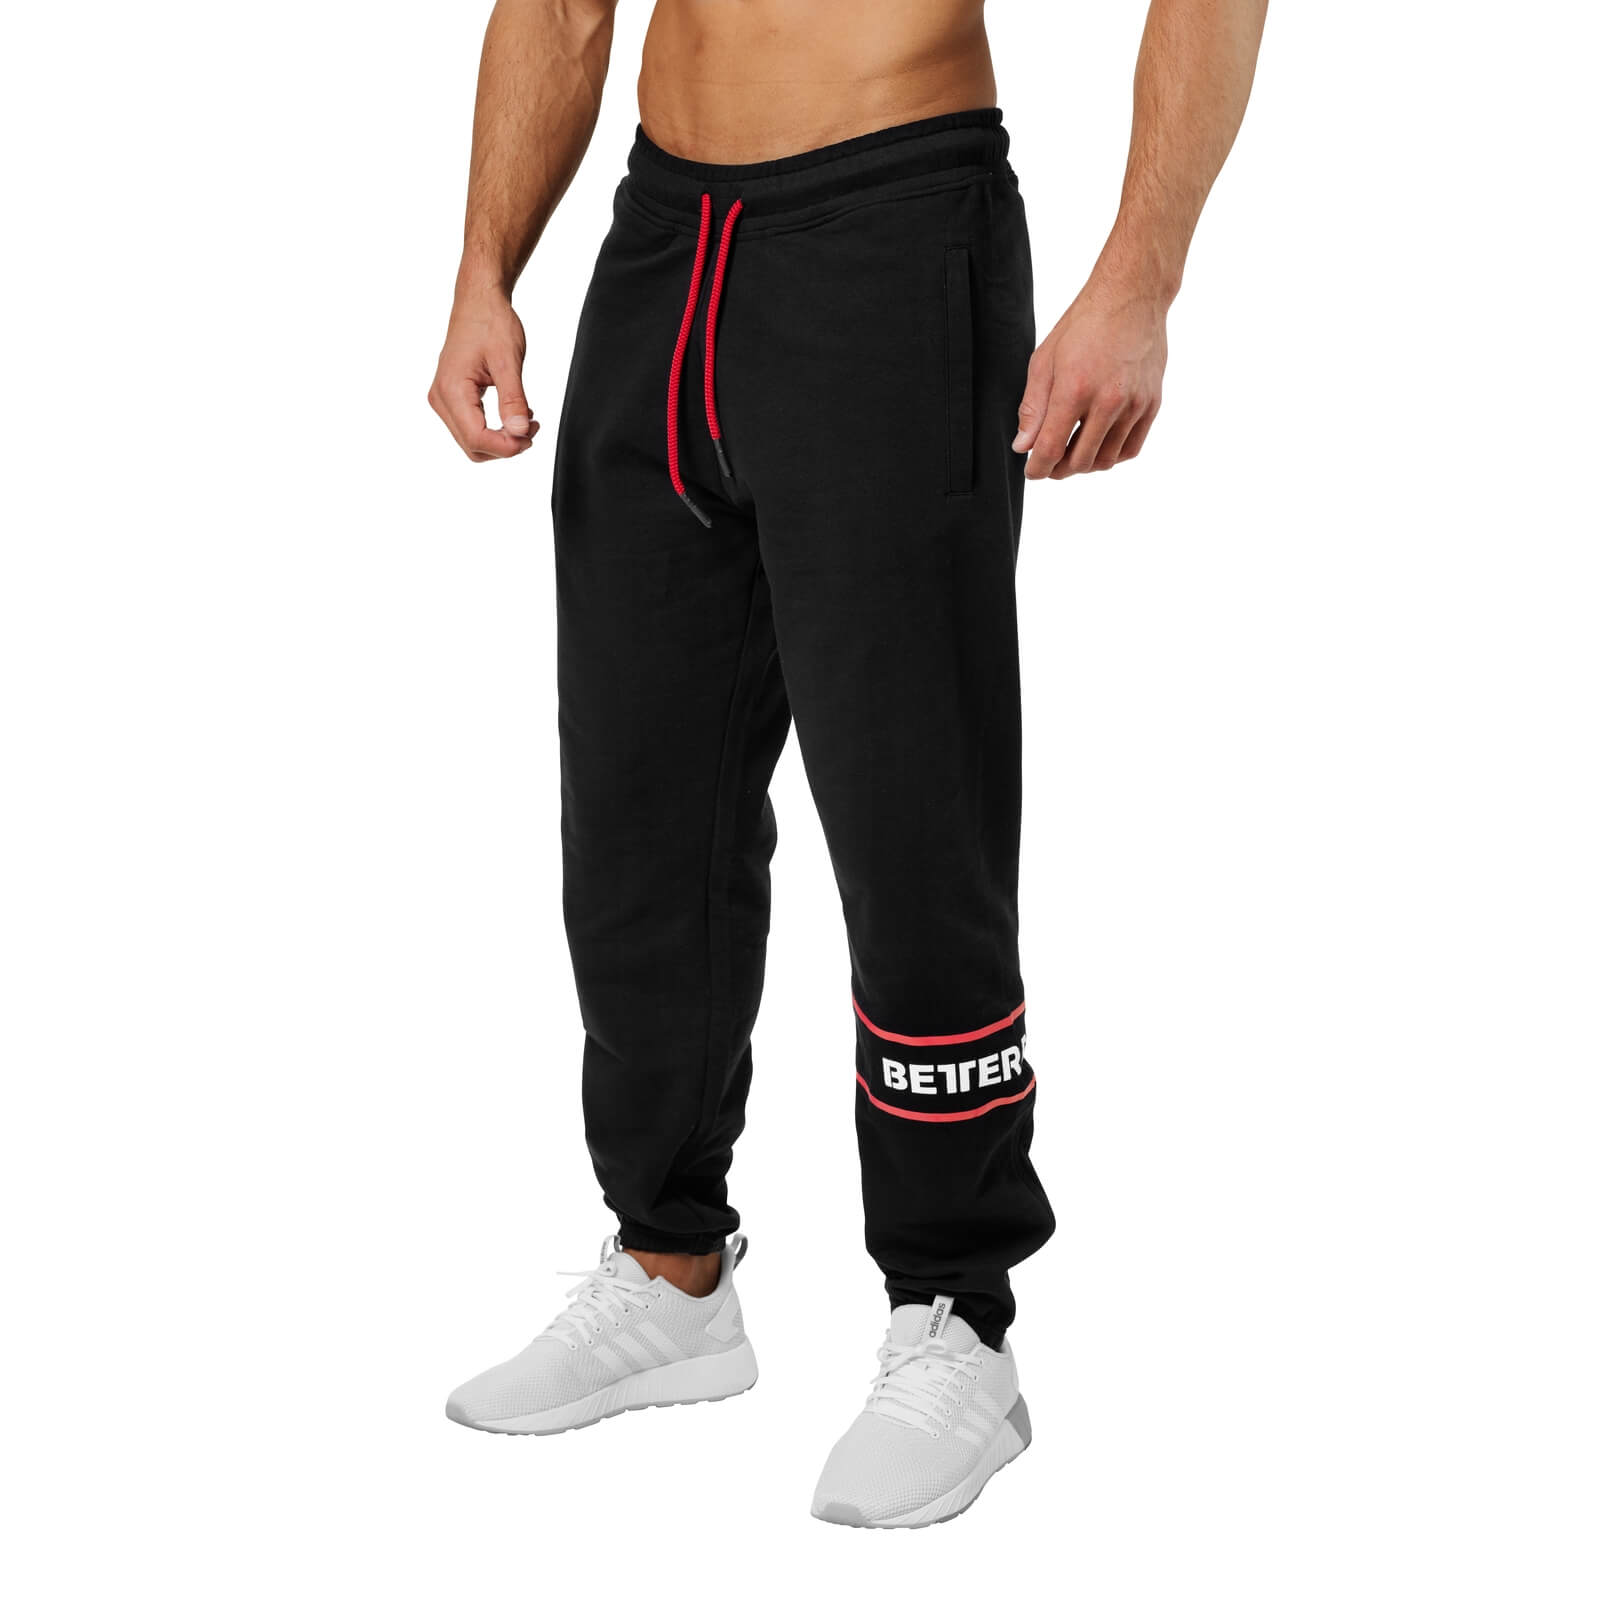 Kolla in Tribeca Sweat Pants, black, Better Bodies hos SportGymButiken.se